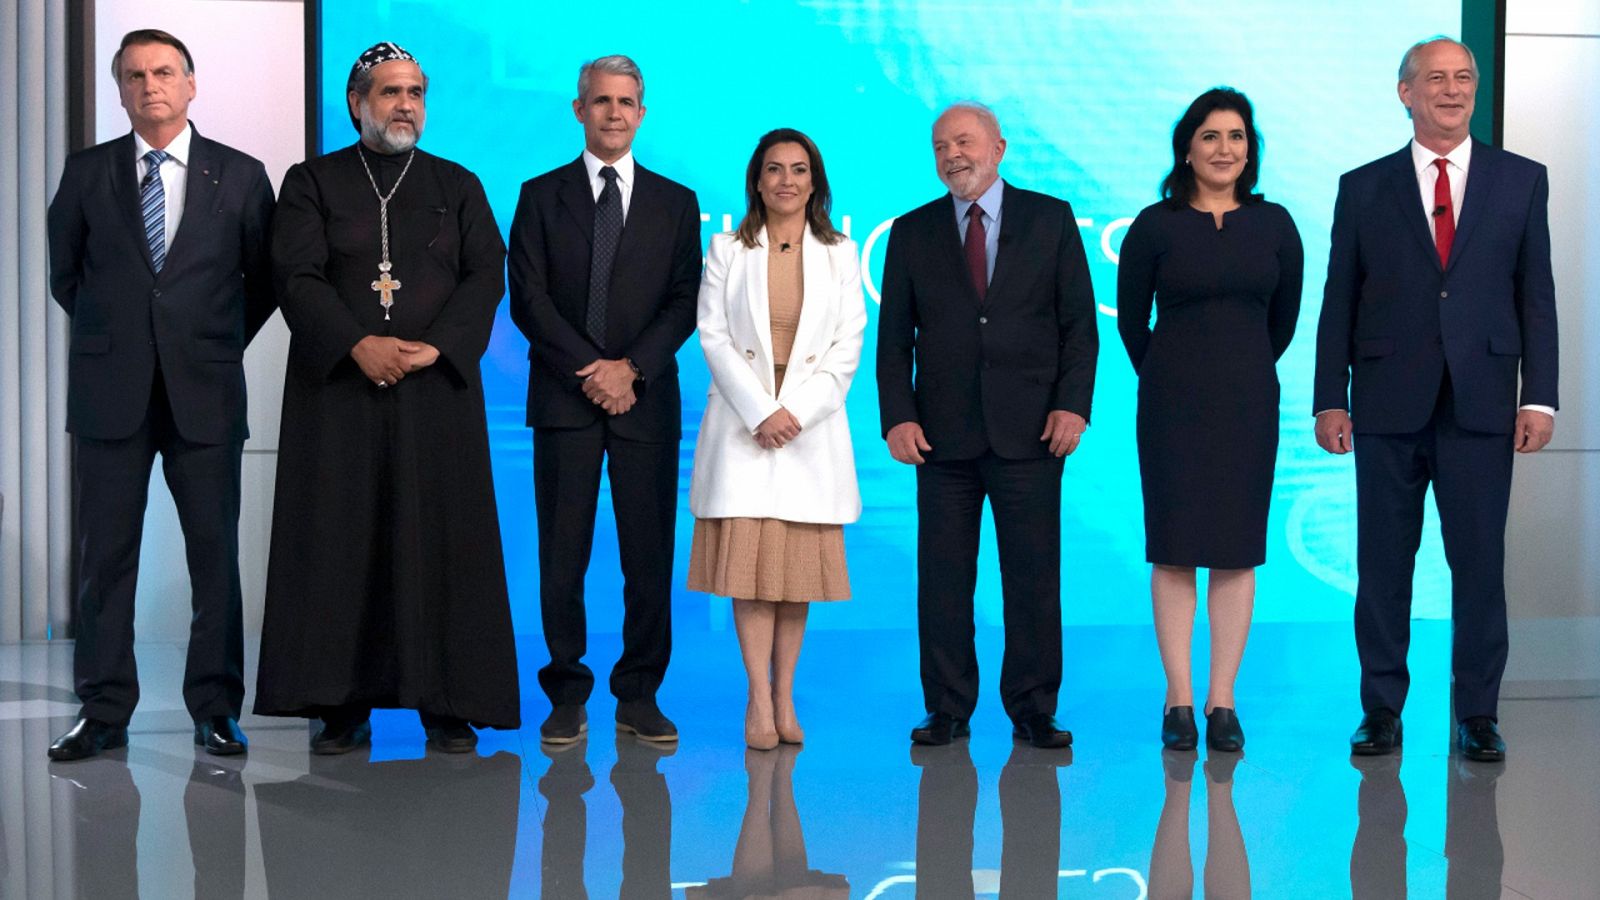 Una imagen de los participantes en el último debate electoral de cara a la primera vuelta de las elecciones presidenciales de Brasil que tendrán lugar el domingo 2 de octubre de 2022.